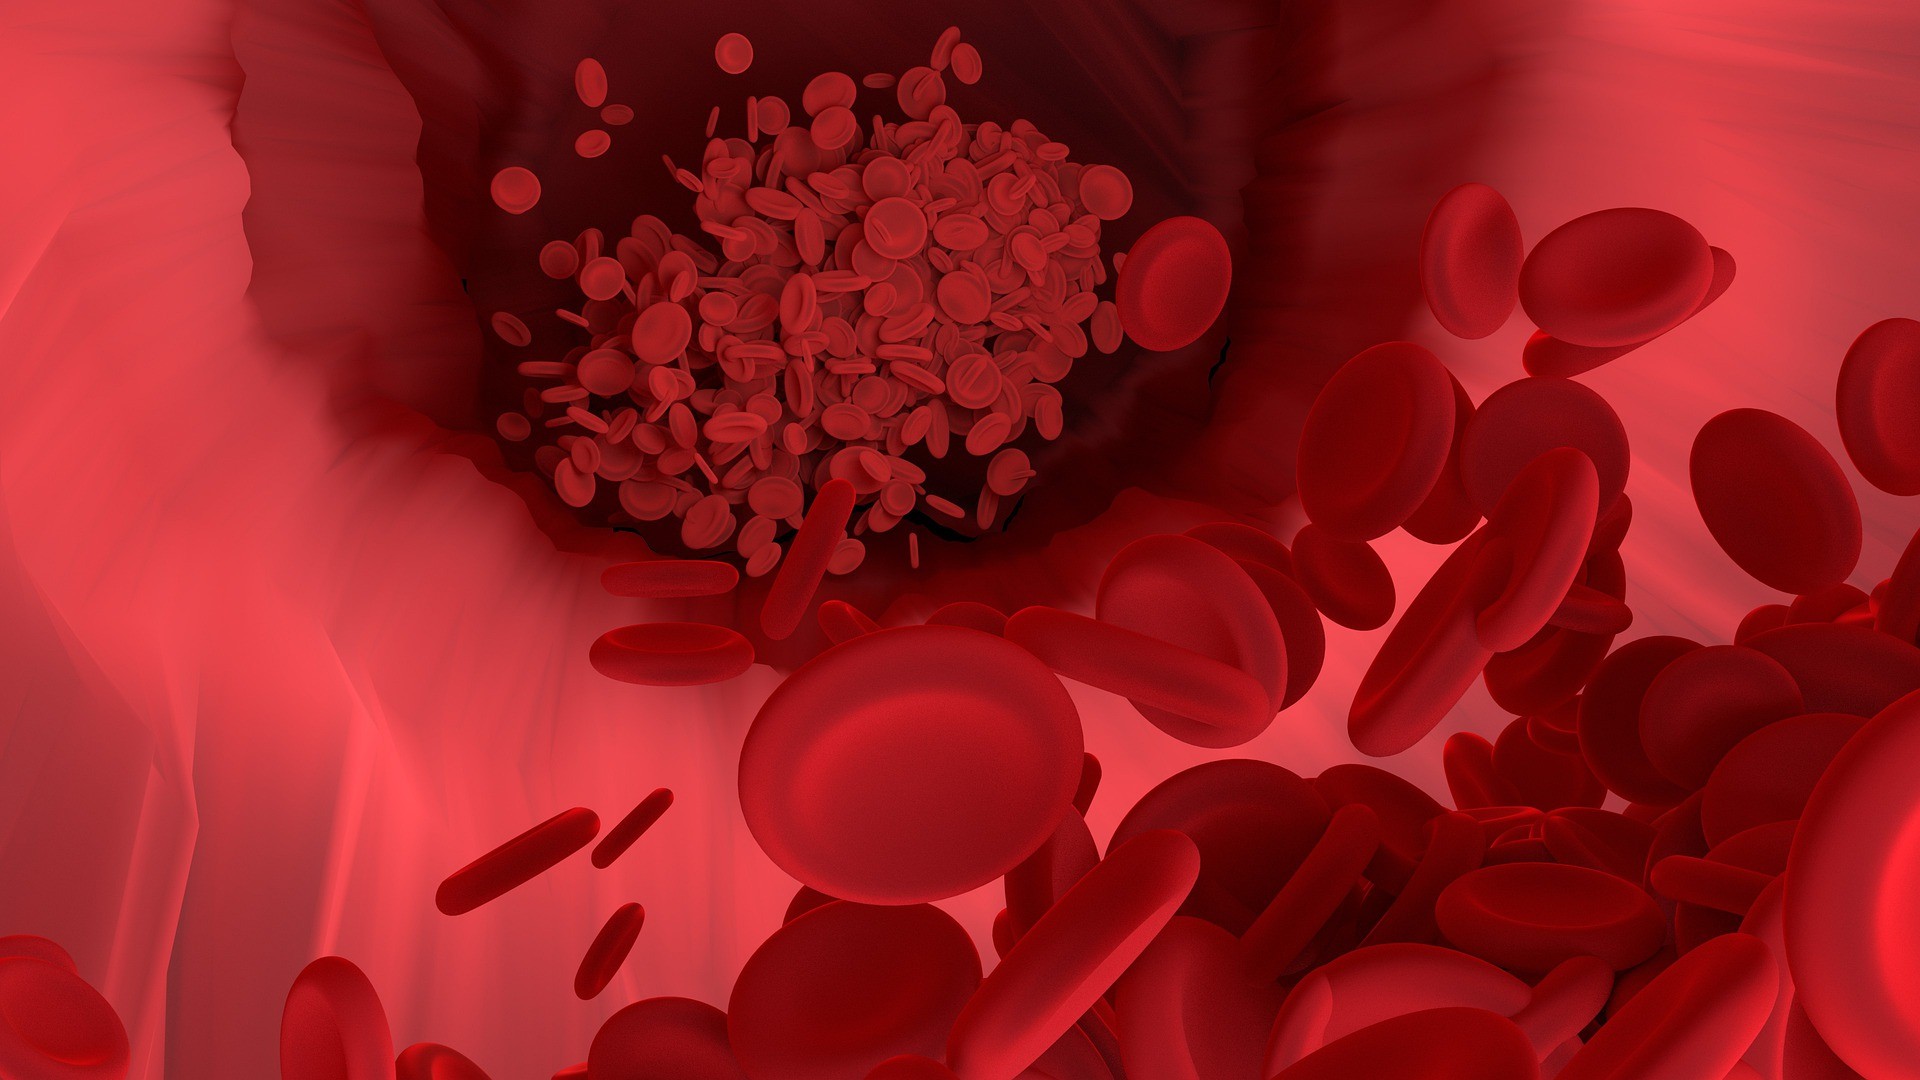 Células-tronco do sangue geneticamente modificadas foram usadas no experimento para tentar bloquear o HIV  (Foto: Pixabay)